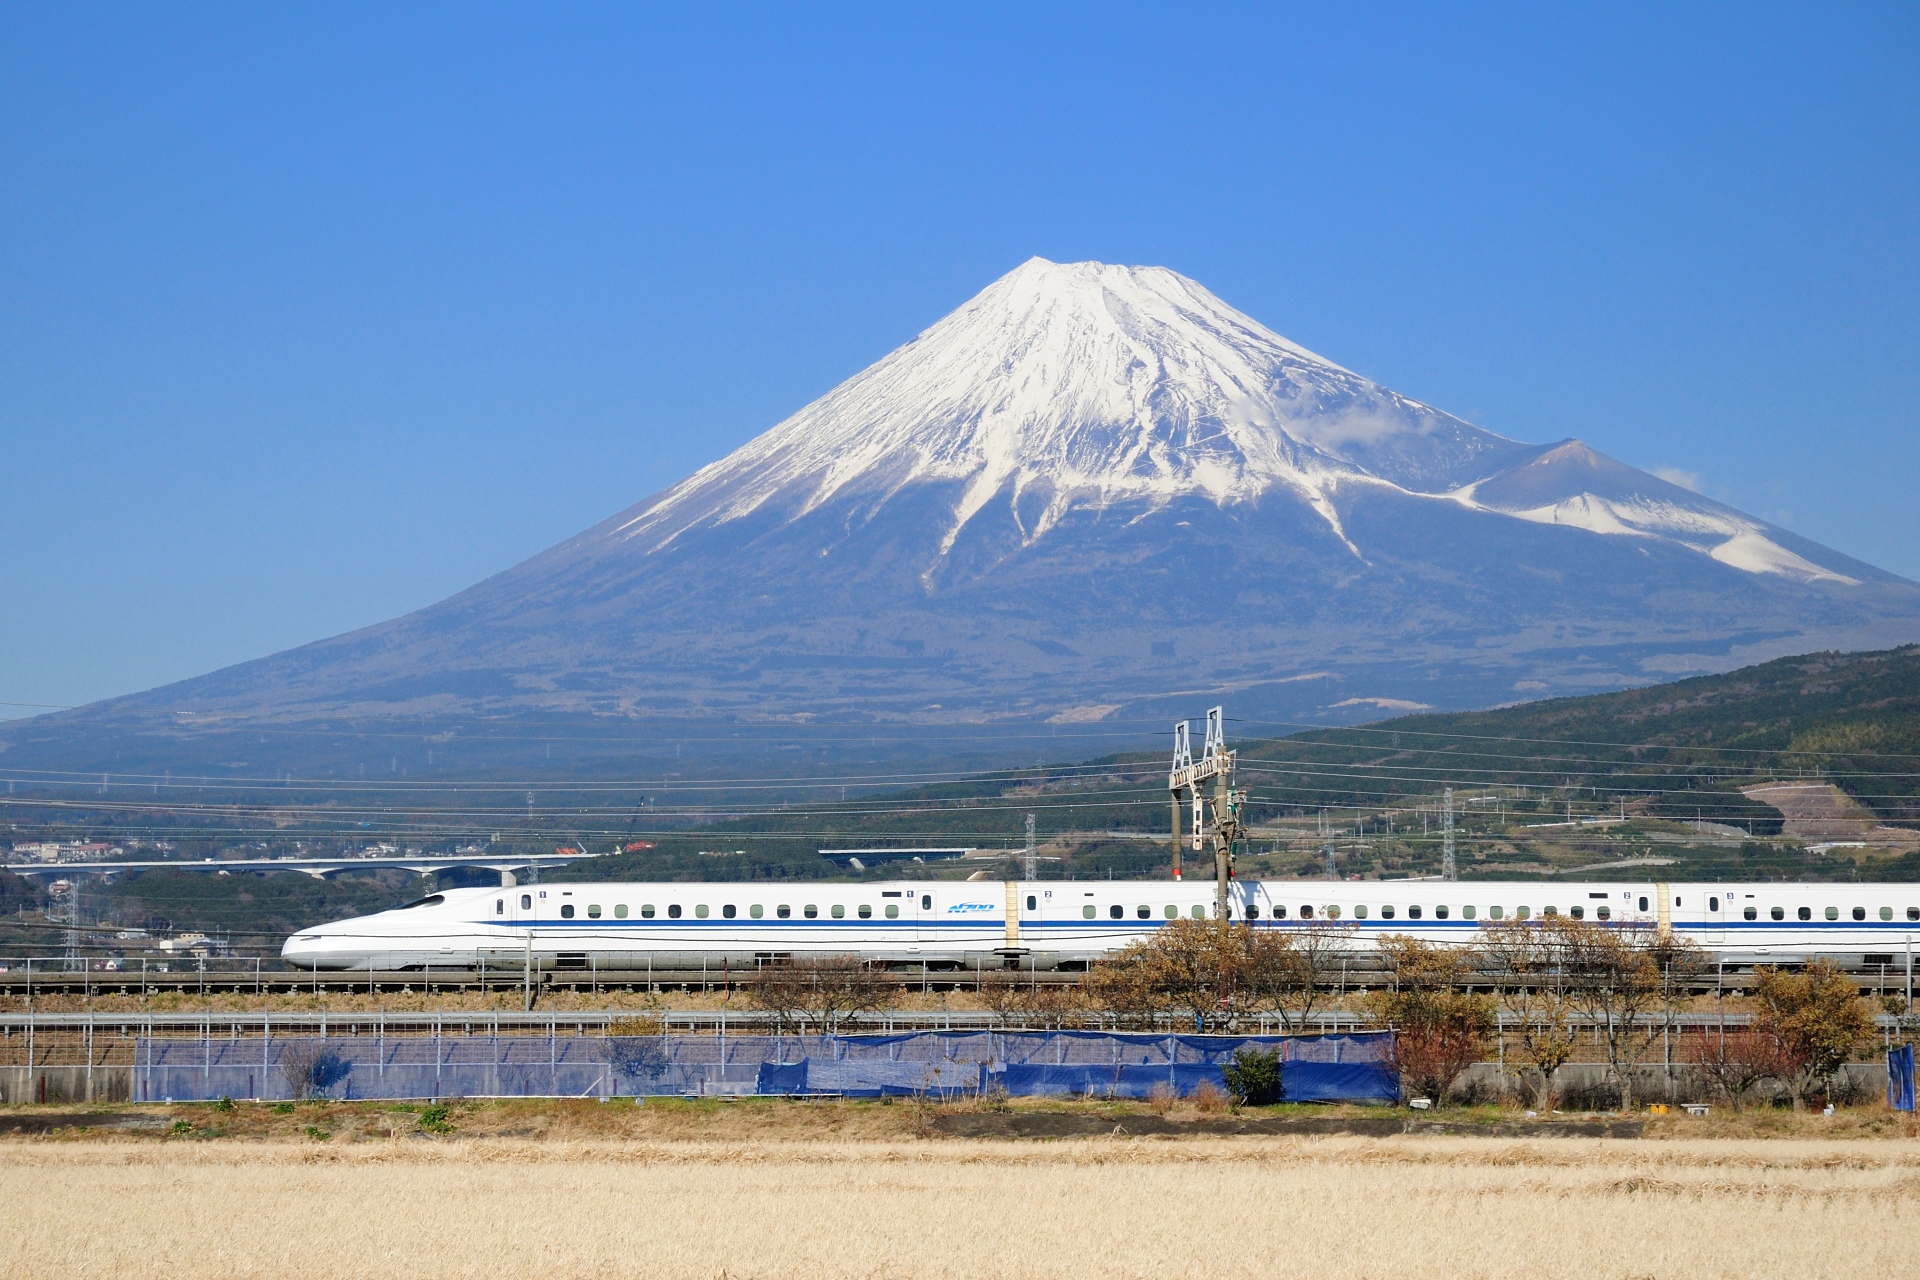 鉄道 新幹線 富士山とn700系新幹線 壁紙19x1280 壁紙館